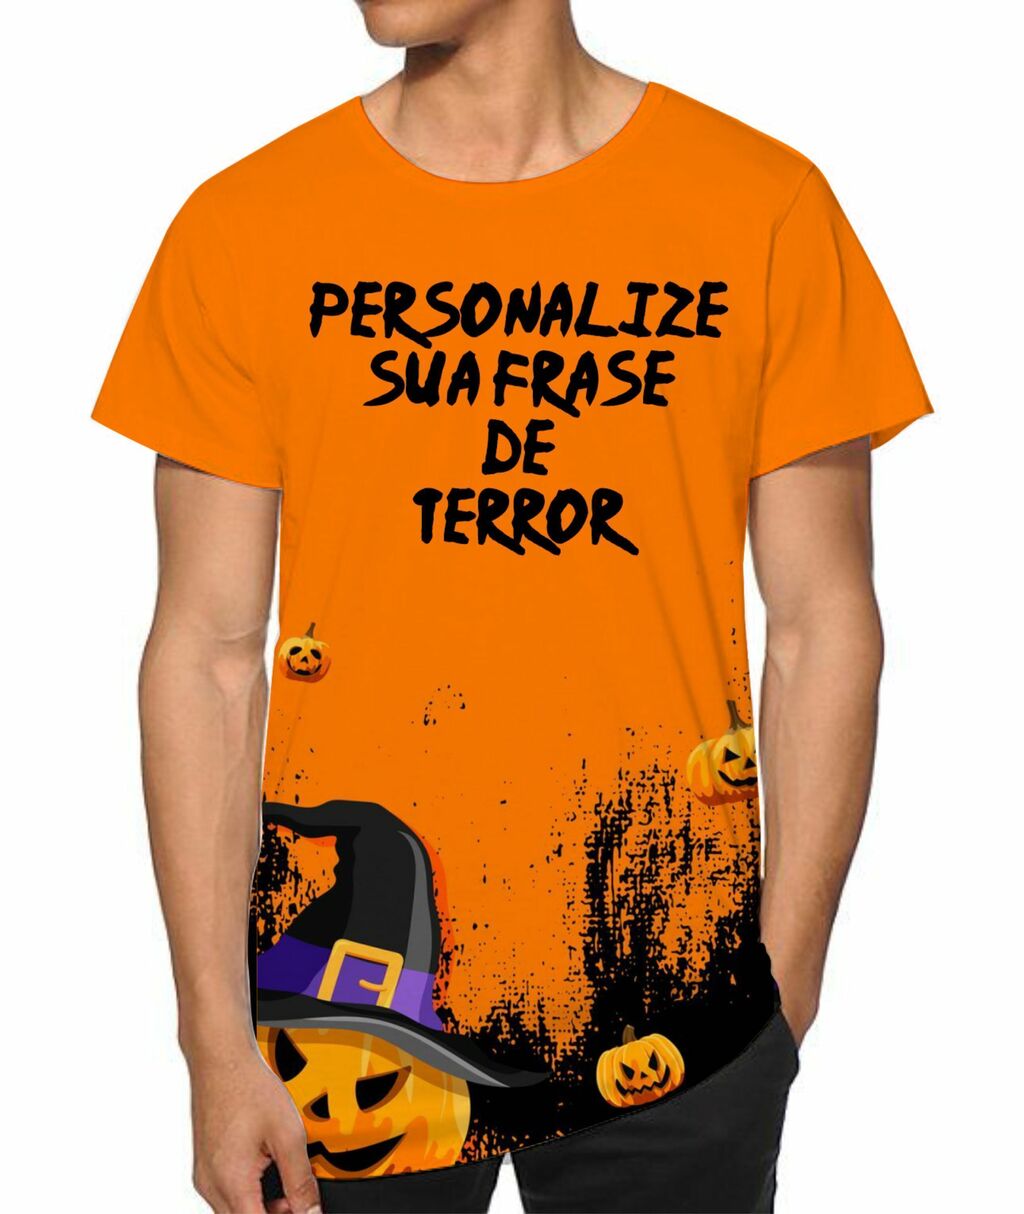 T shirt roblox halloween  Roupas de halloween, Roupas de unicórnio, Imagem  de roupas